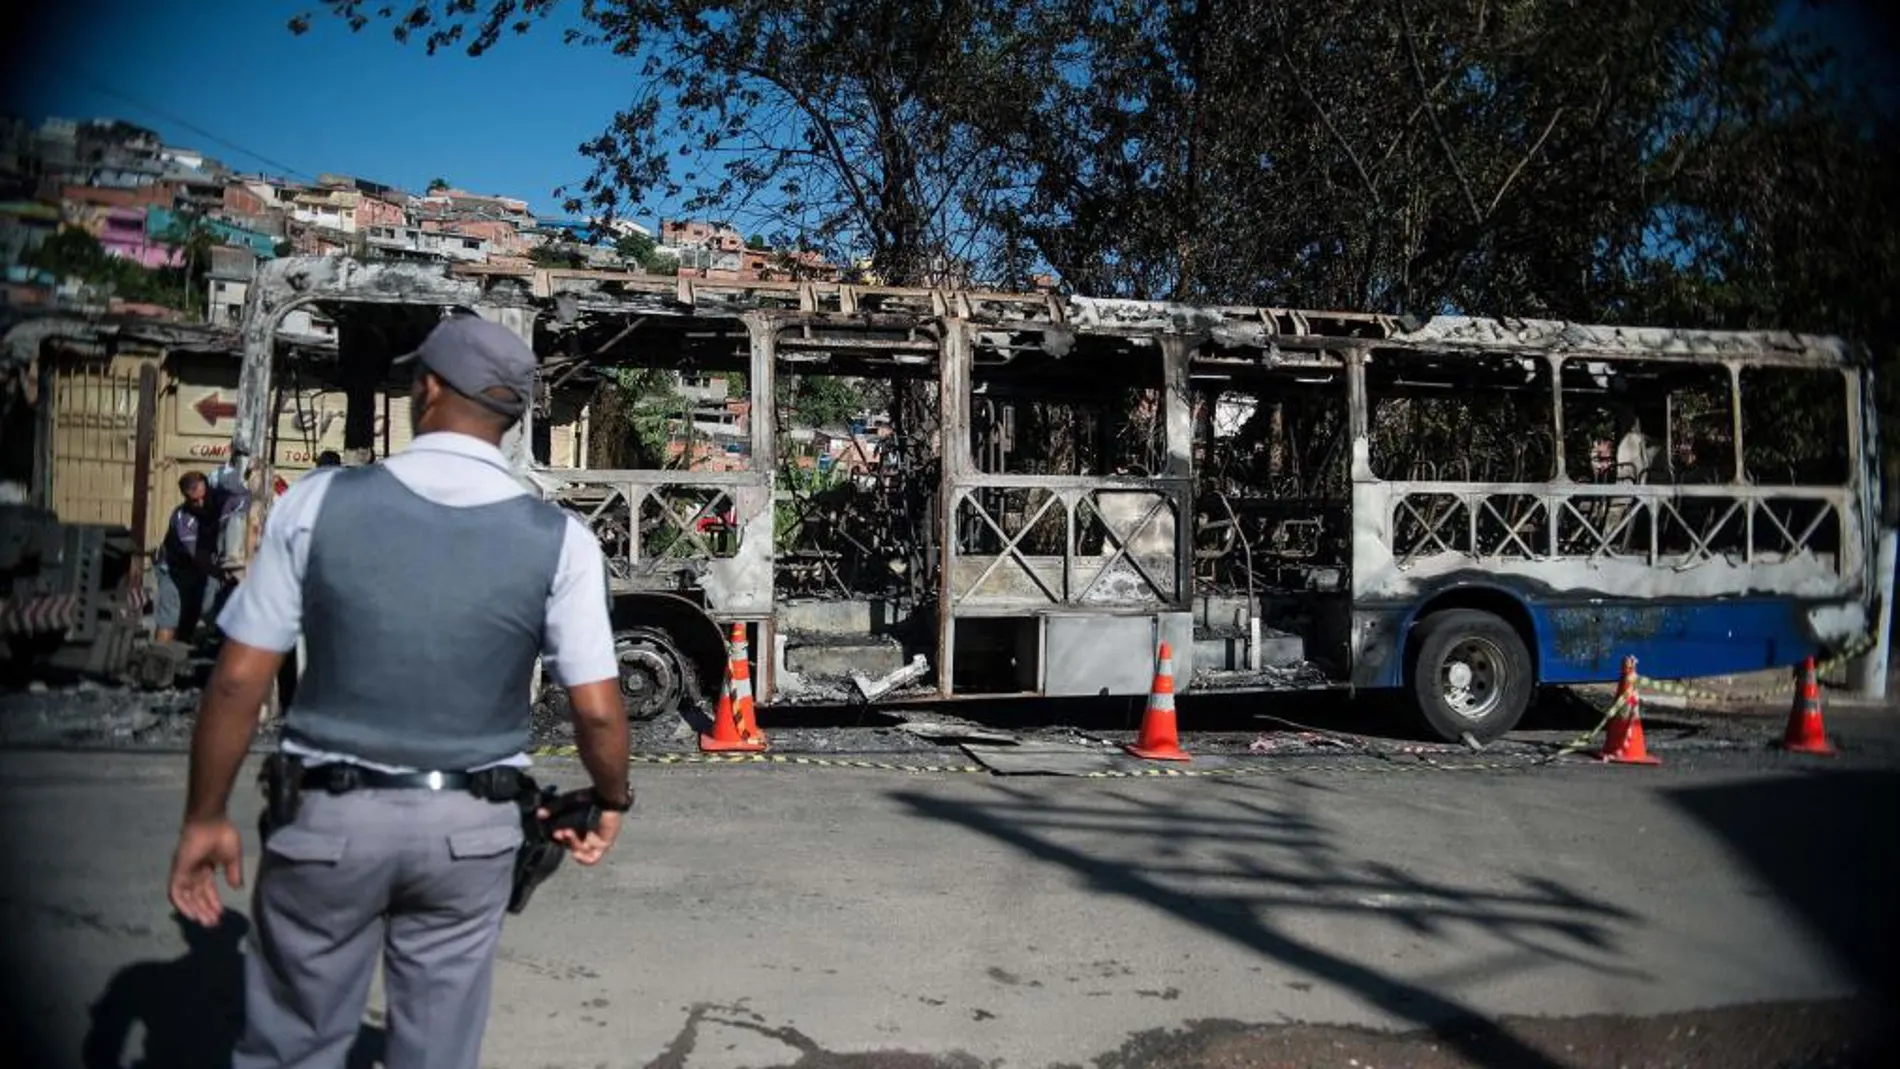 Fotografía cedida por Agencia Brasil tomada hoy, miércoles 29 de enero de 2014, que muestra un autobus quemado en la ciudad de Sao Paulo